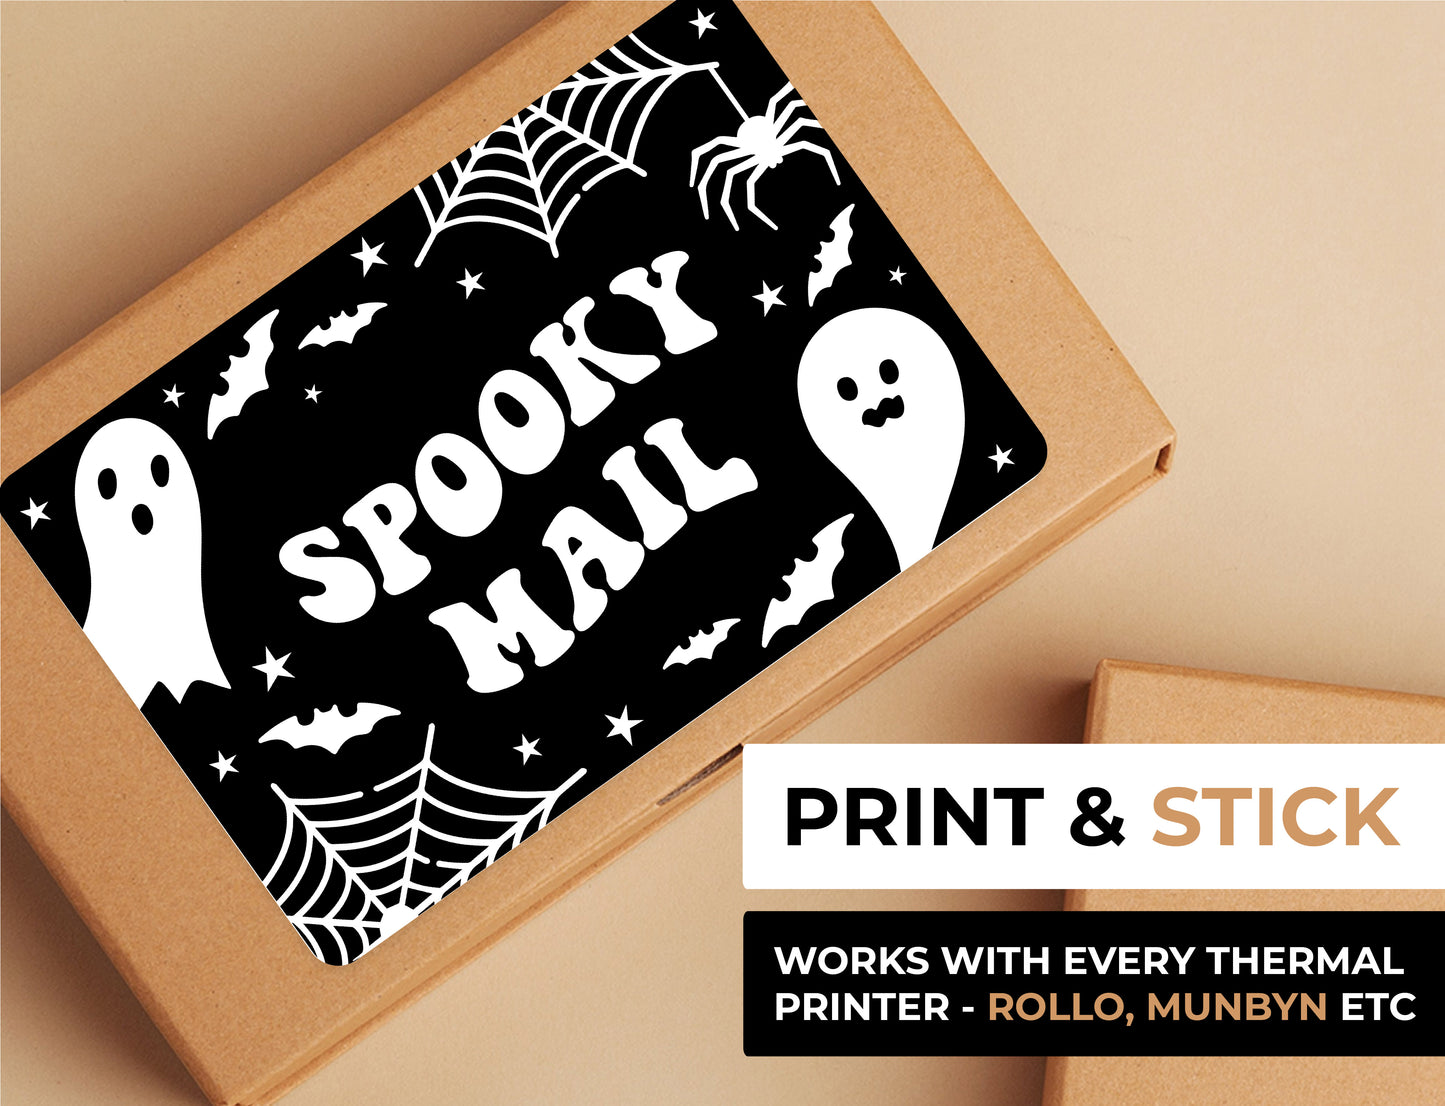 Spooky Mail BLACK Label Bundle